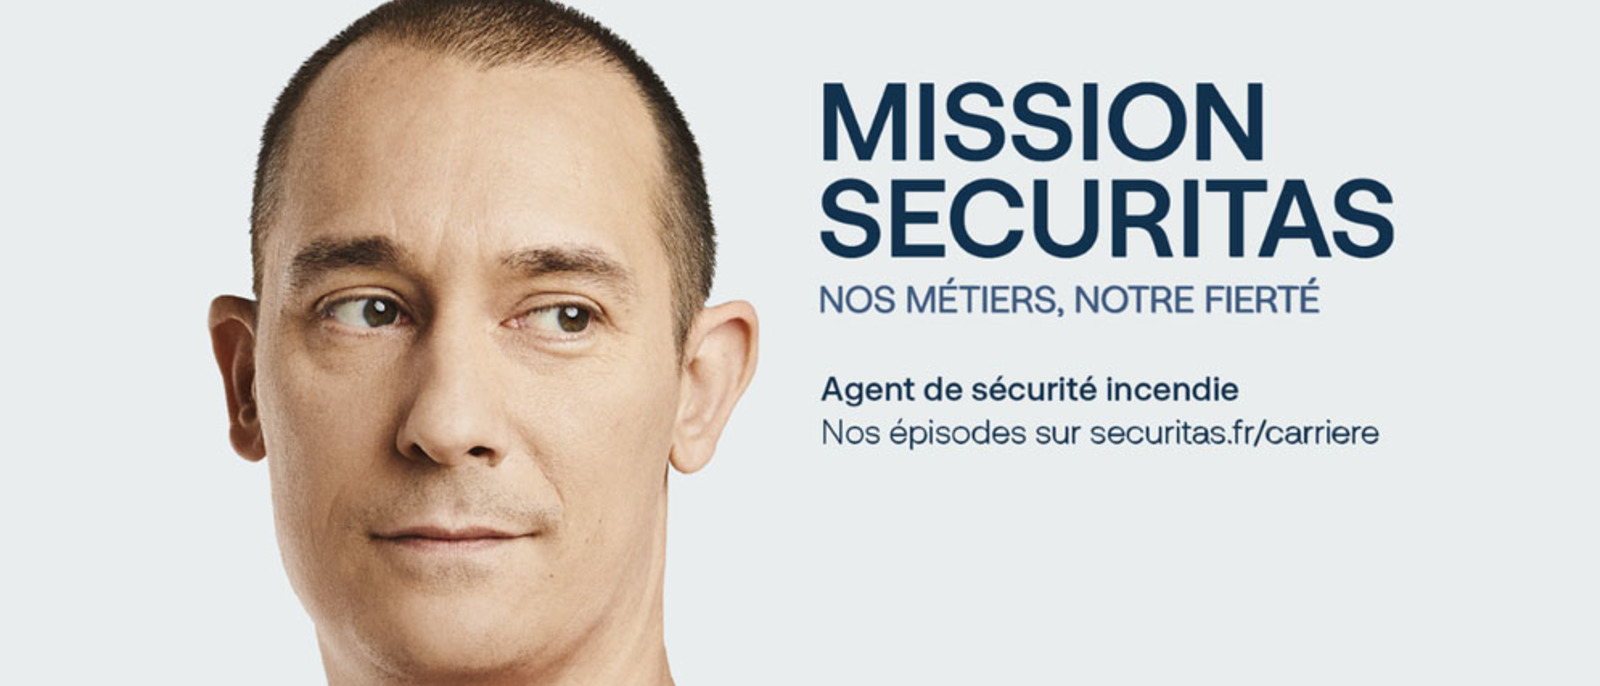 Mission Securitas : dans le quotidien d’un agent de sécurité incendie 